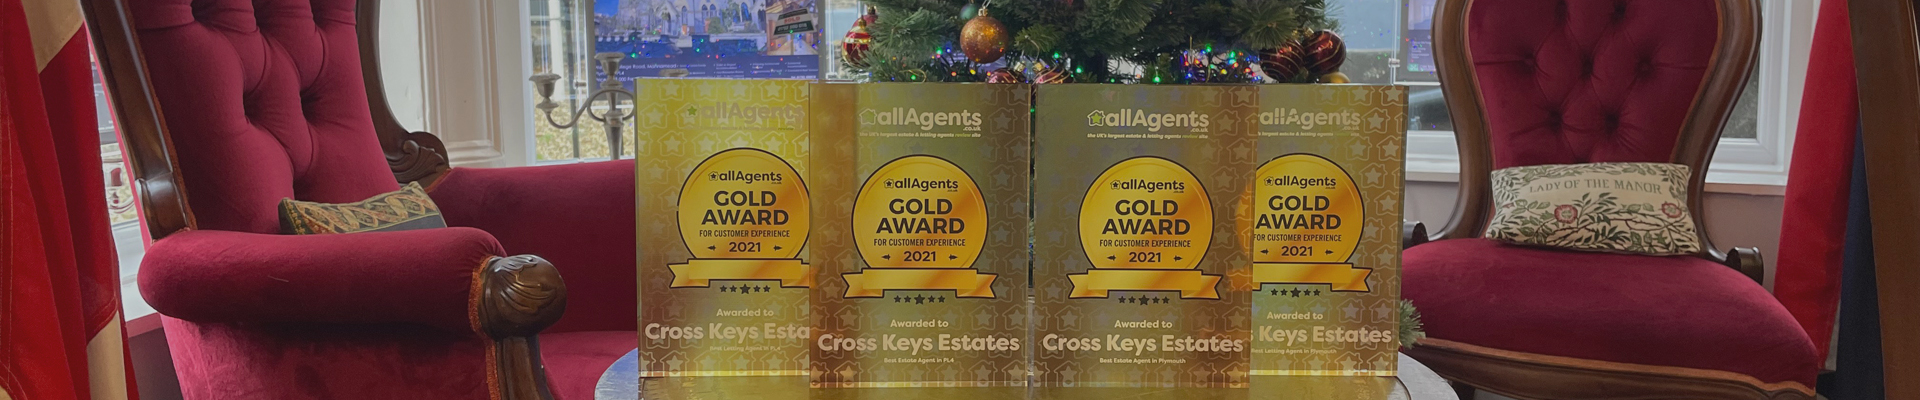 Cross Keys Estates - Residential Sales and Lettings - Winner, Winner, Chicken Dinner!!!